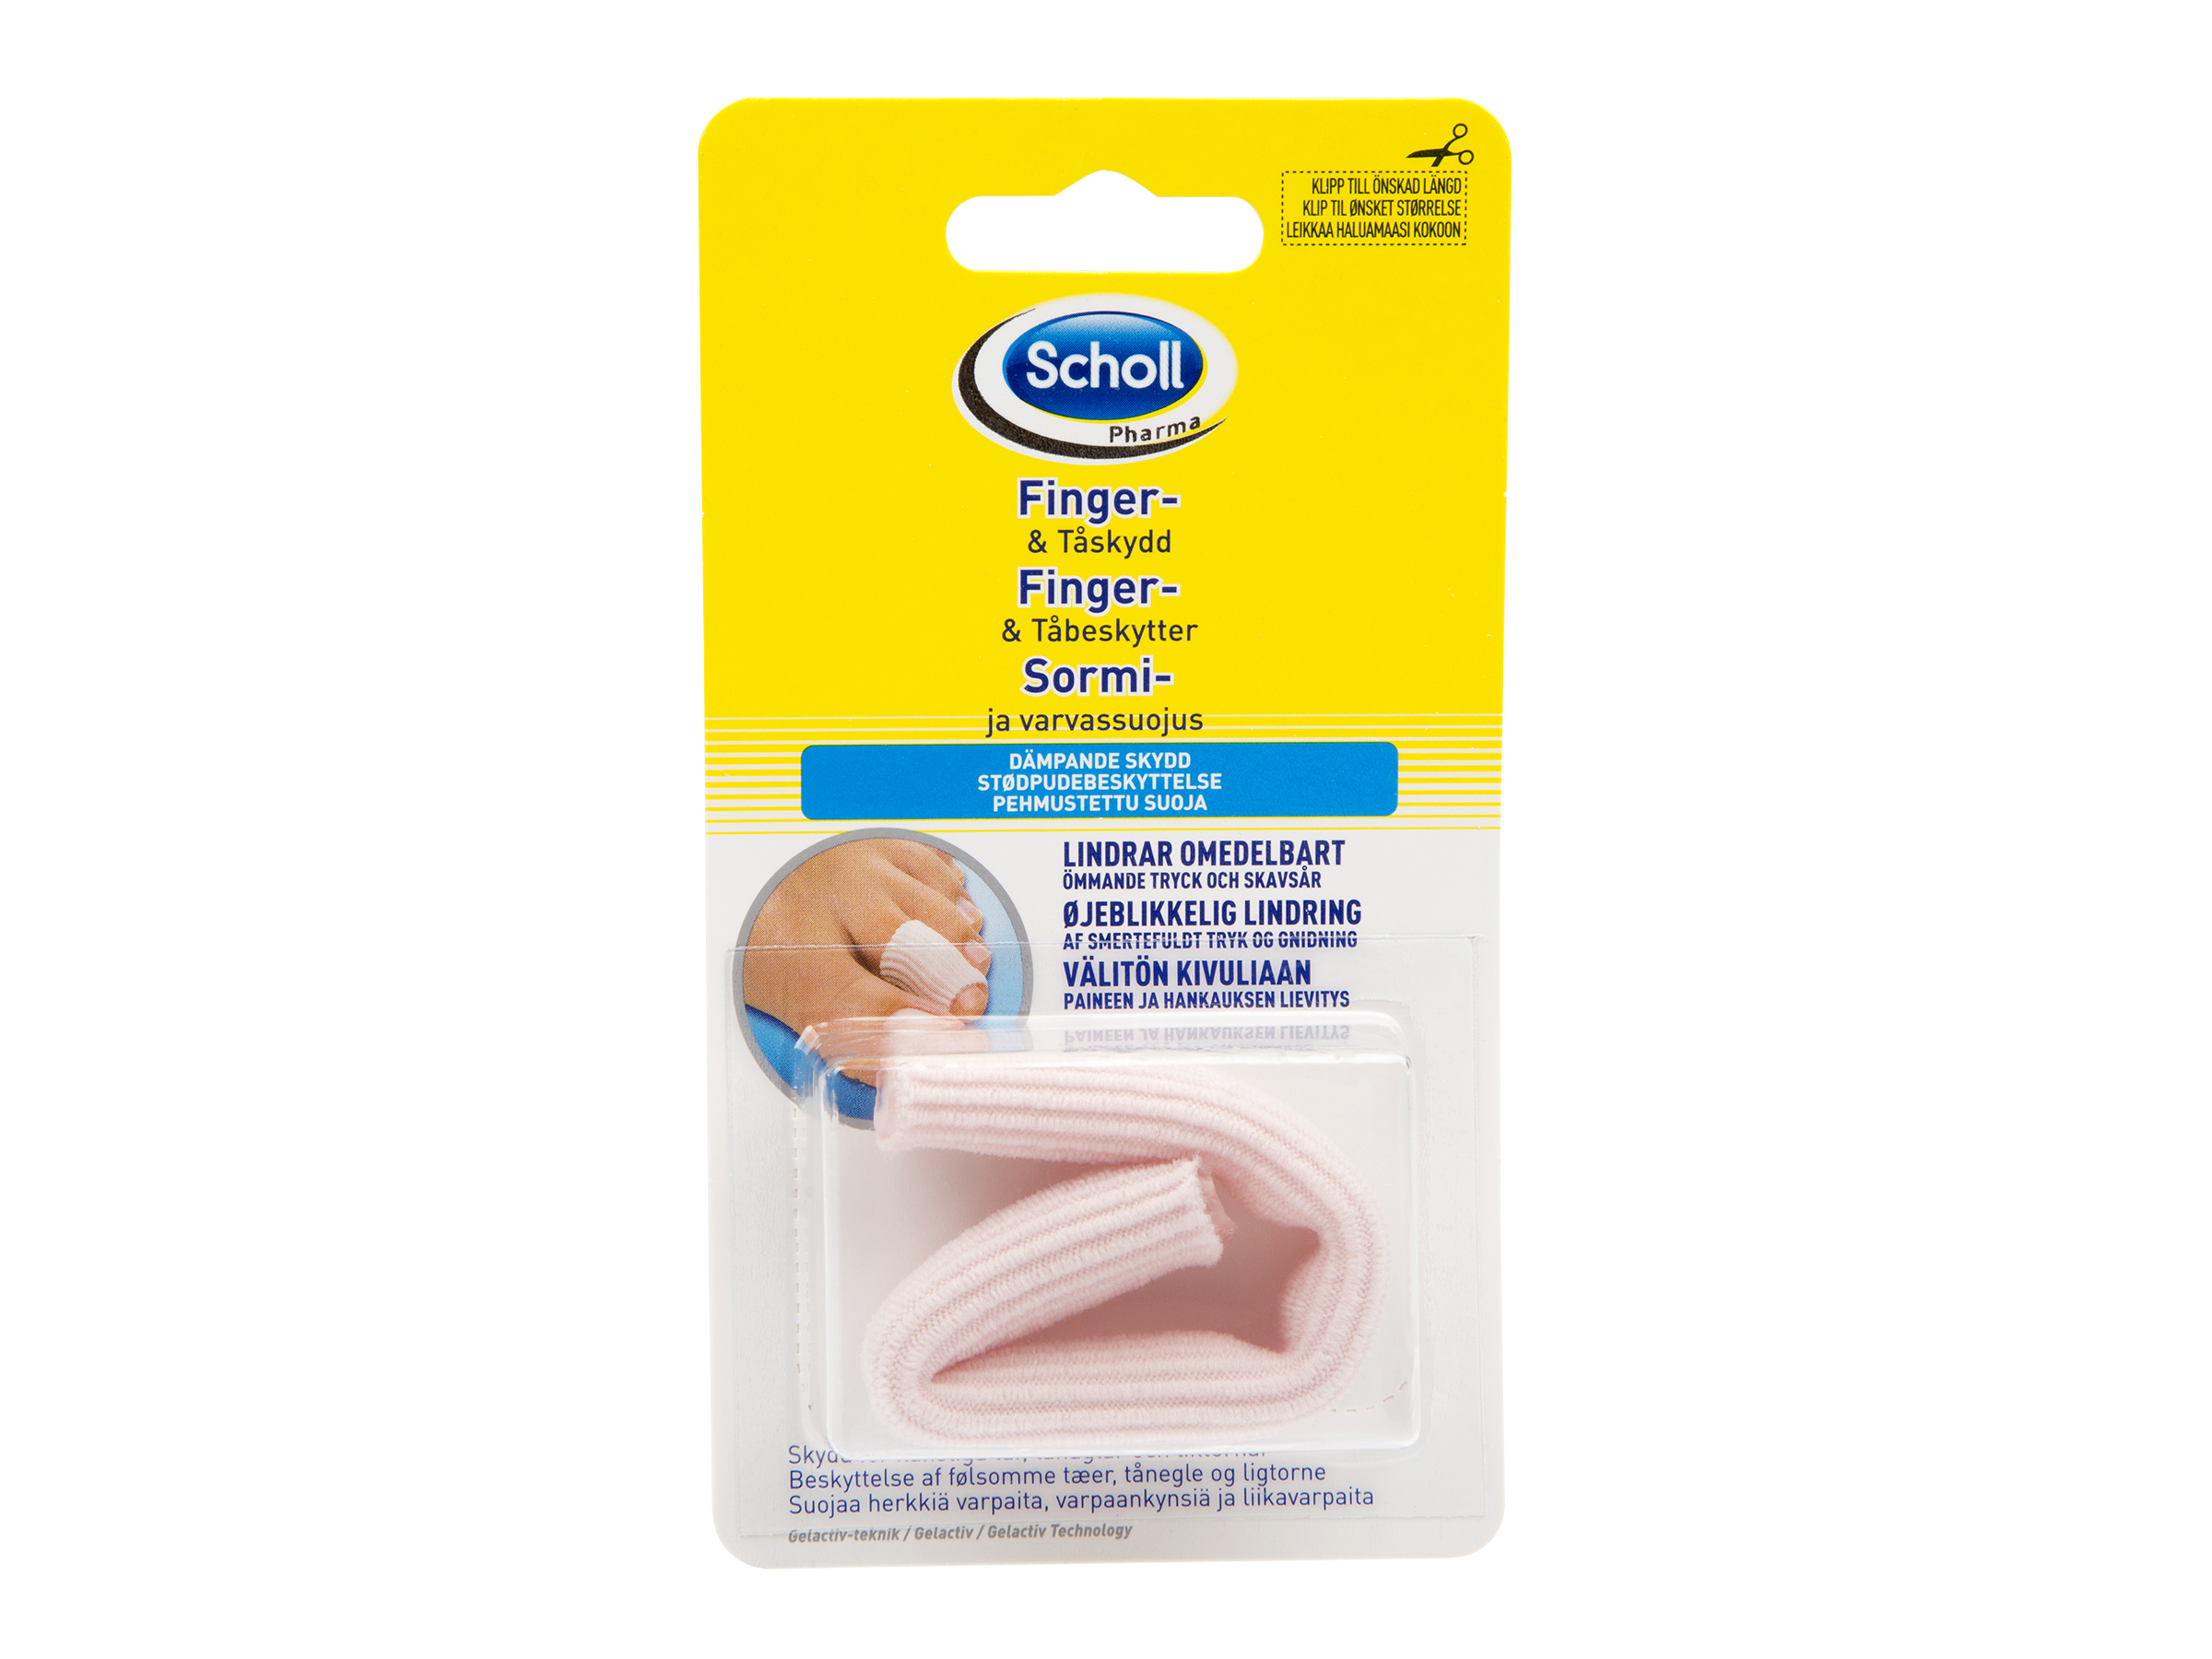 Scholl Pharma finger- og tåbeskytter, 1 stk